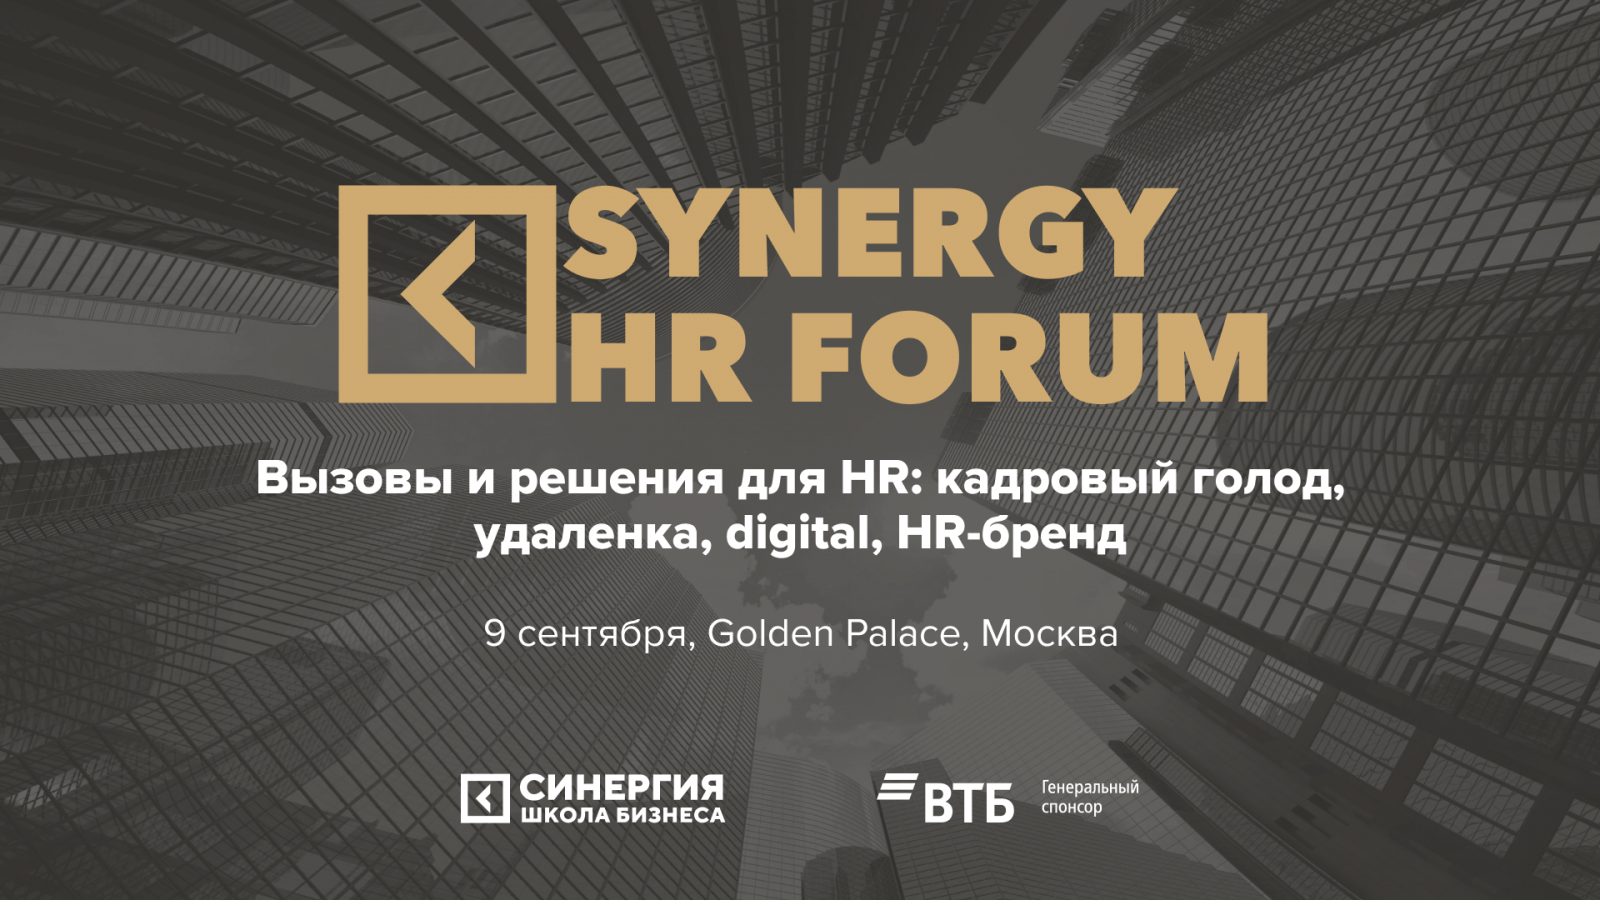 Synergy HR Forum (анонс).png